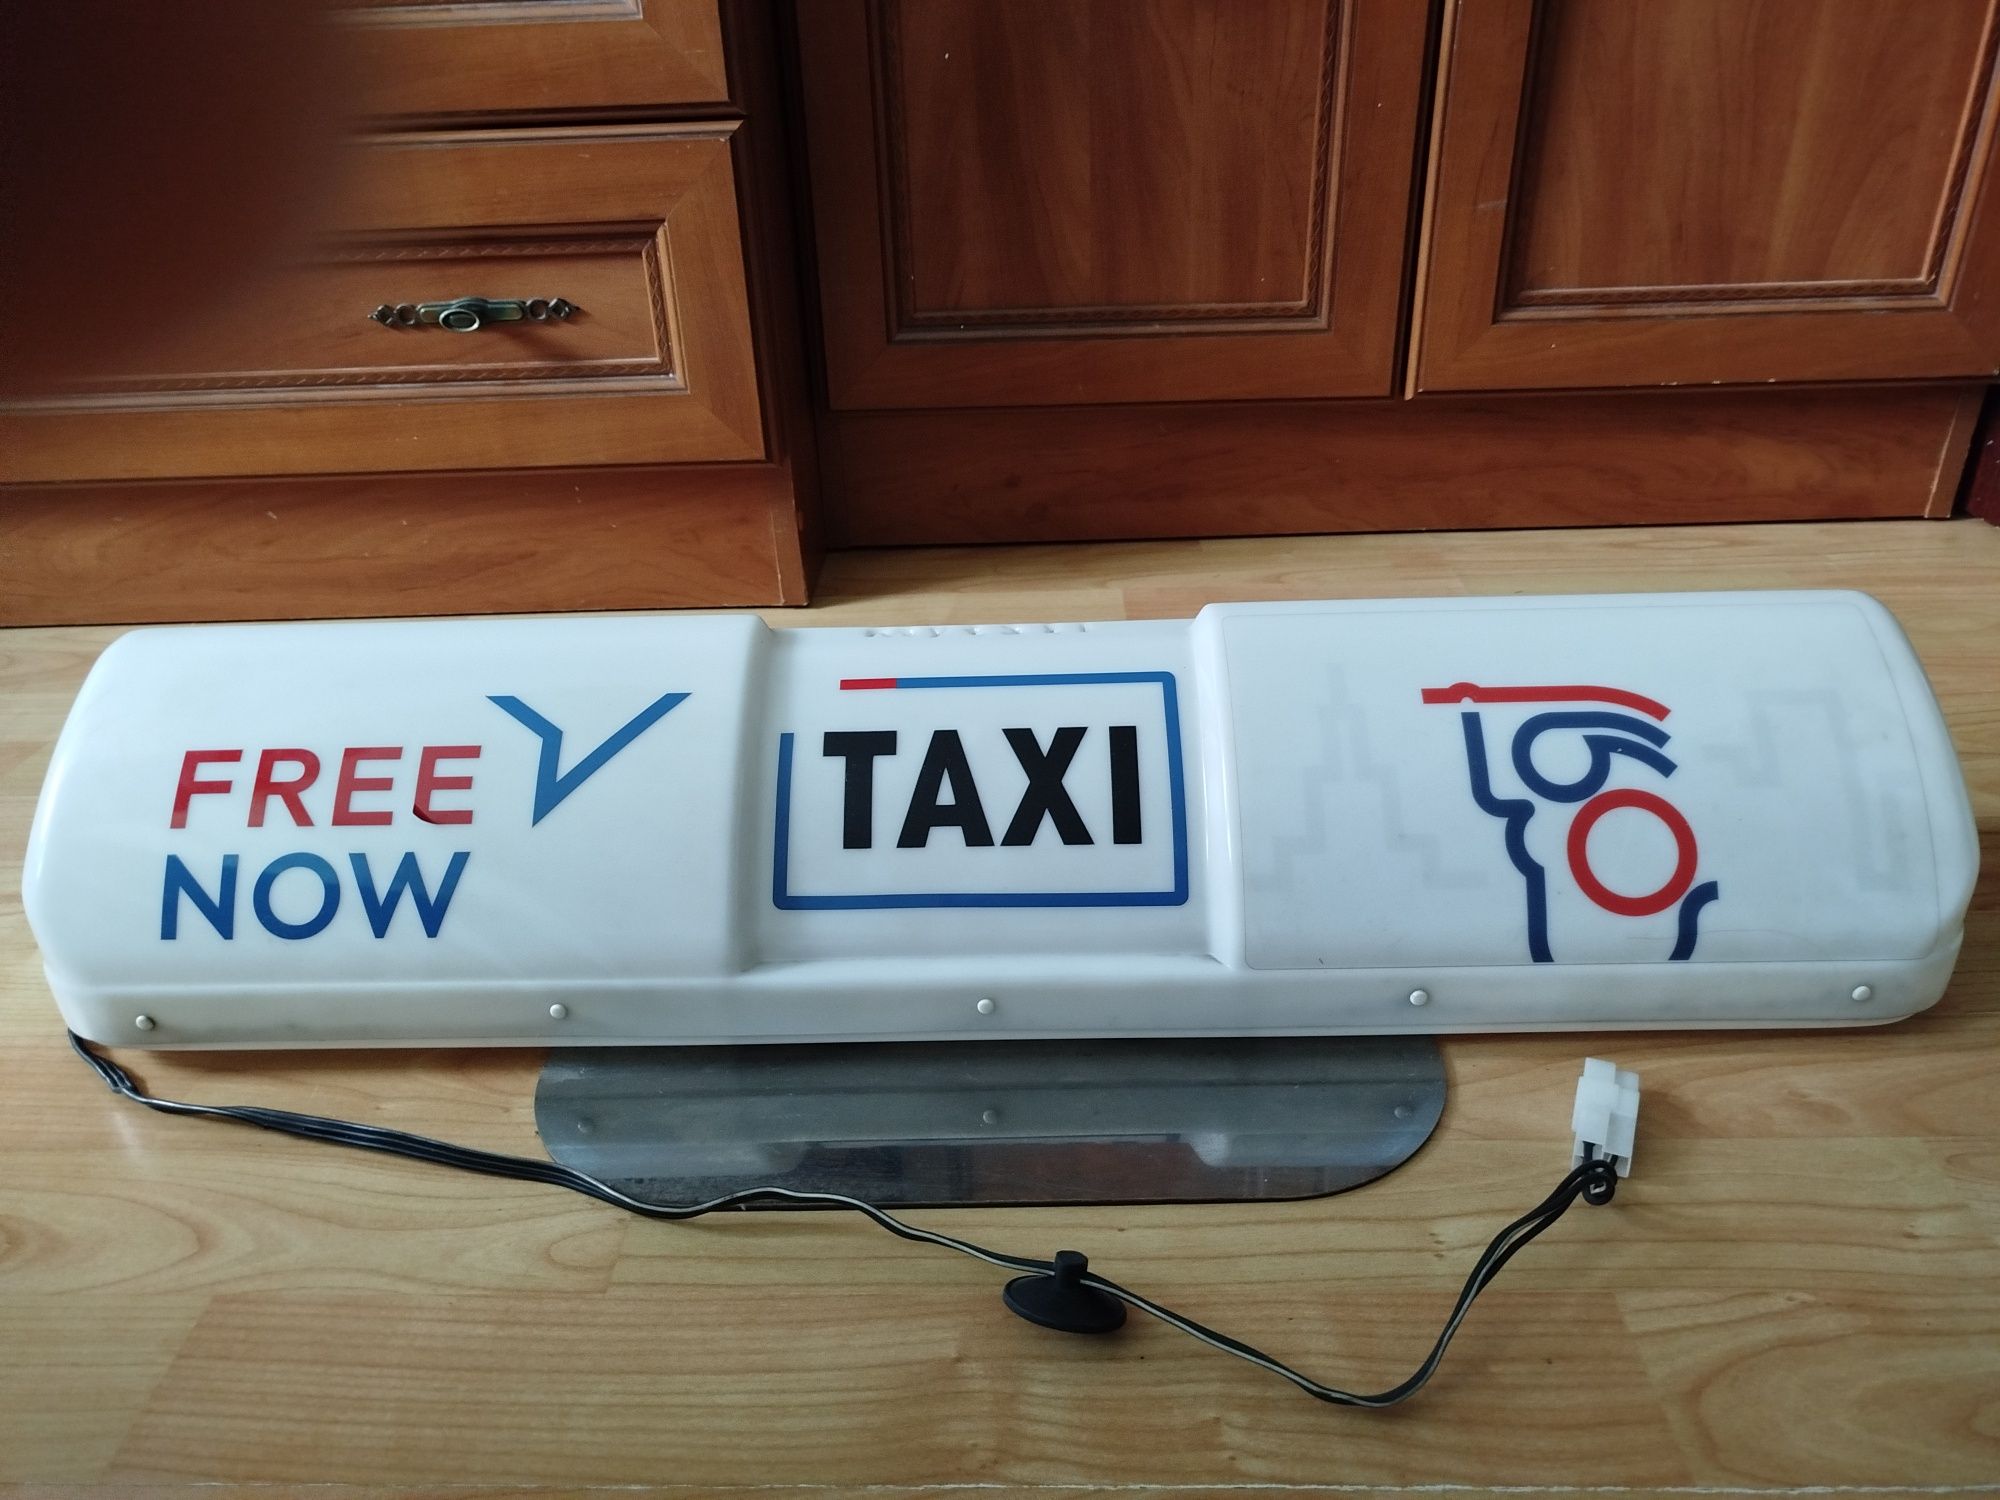 Kogut Taxi FreeNow